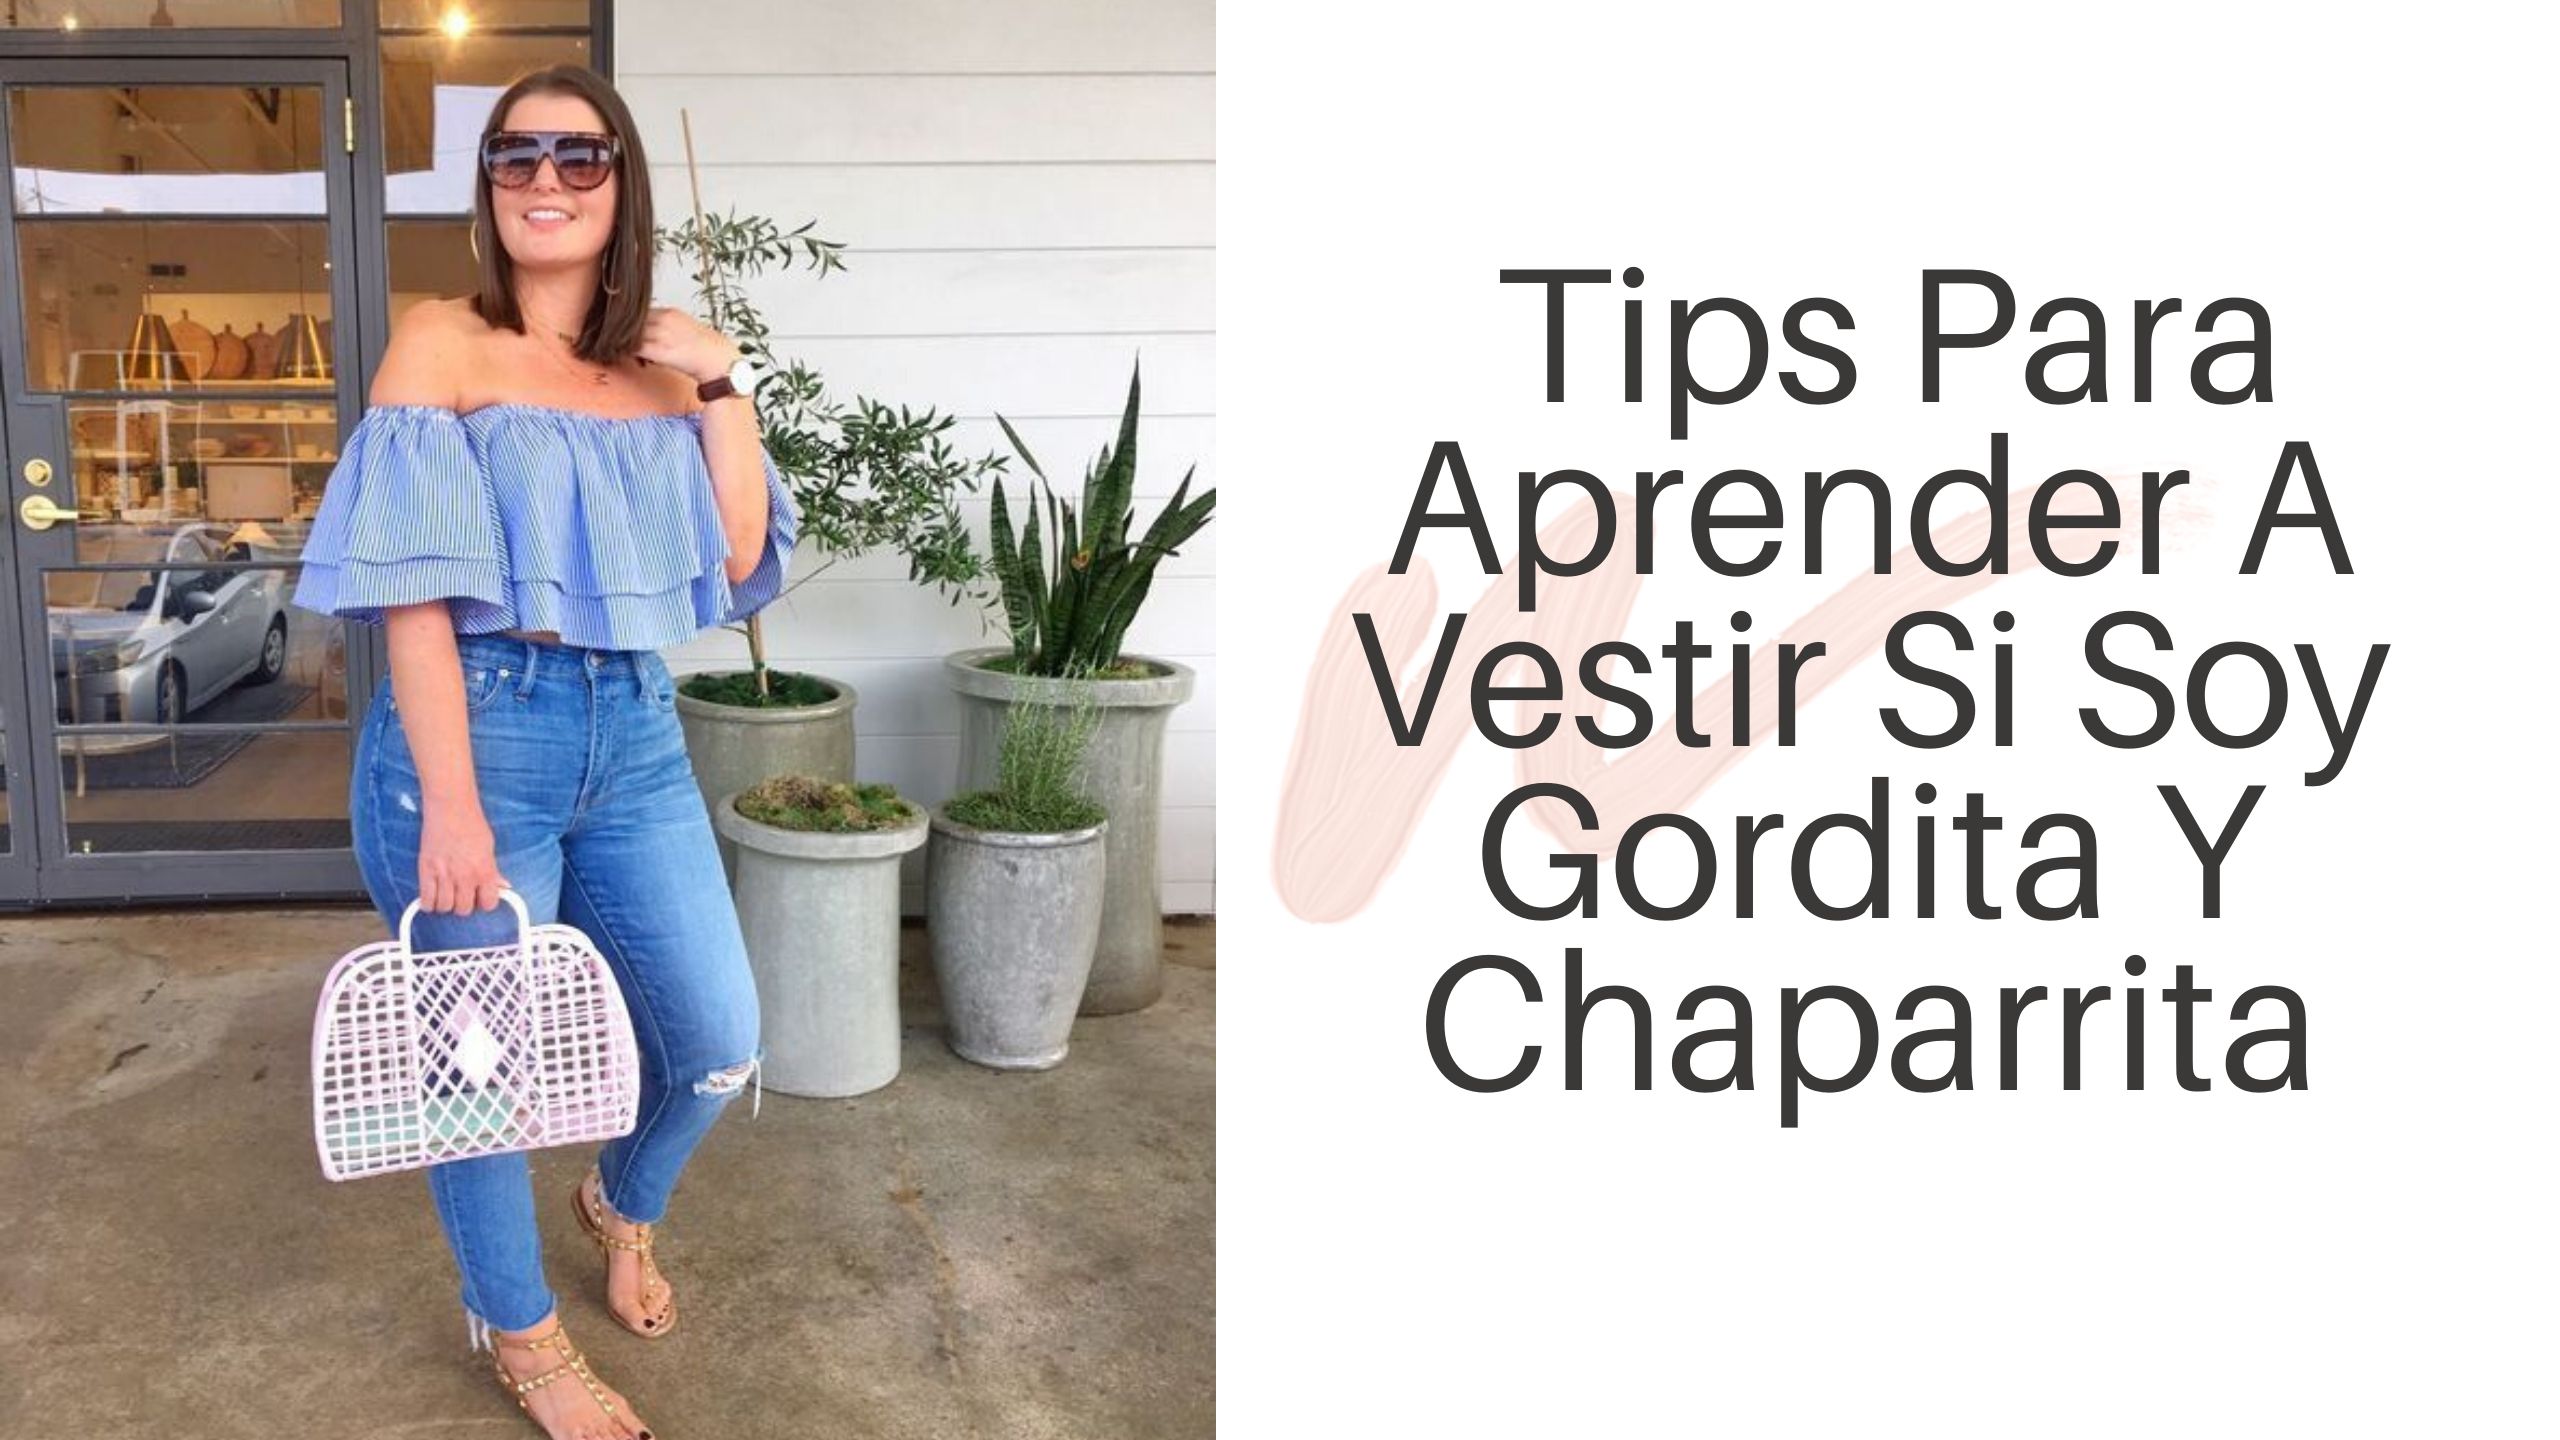 Tips Para Aprender A Vestir Si Soy Gordita Y Chaparrita